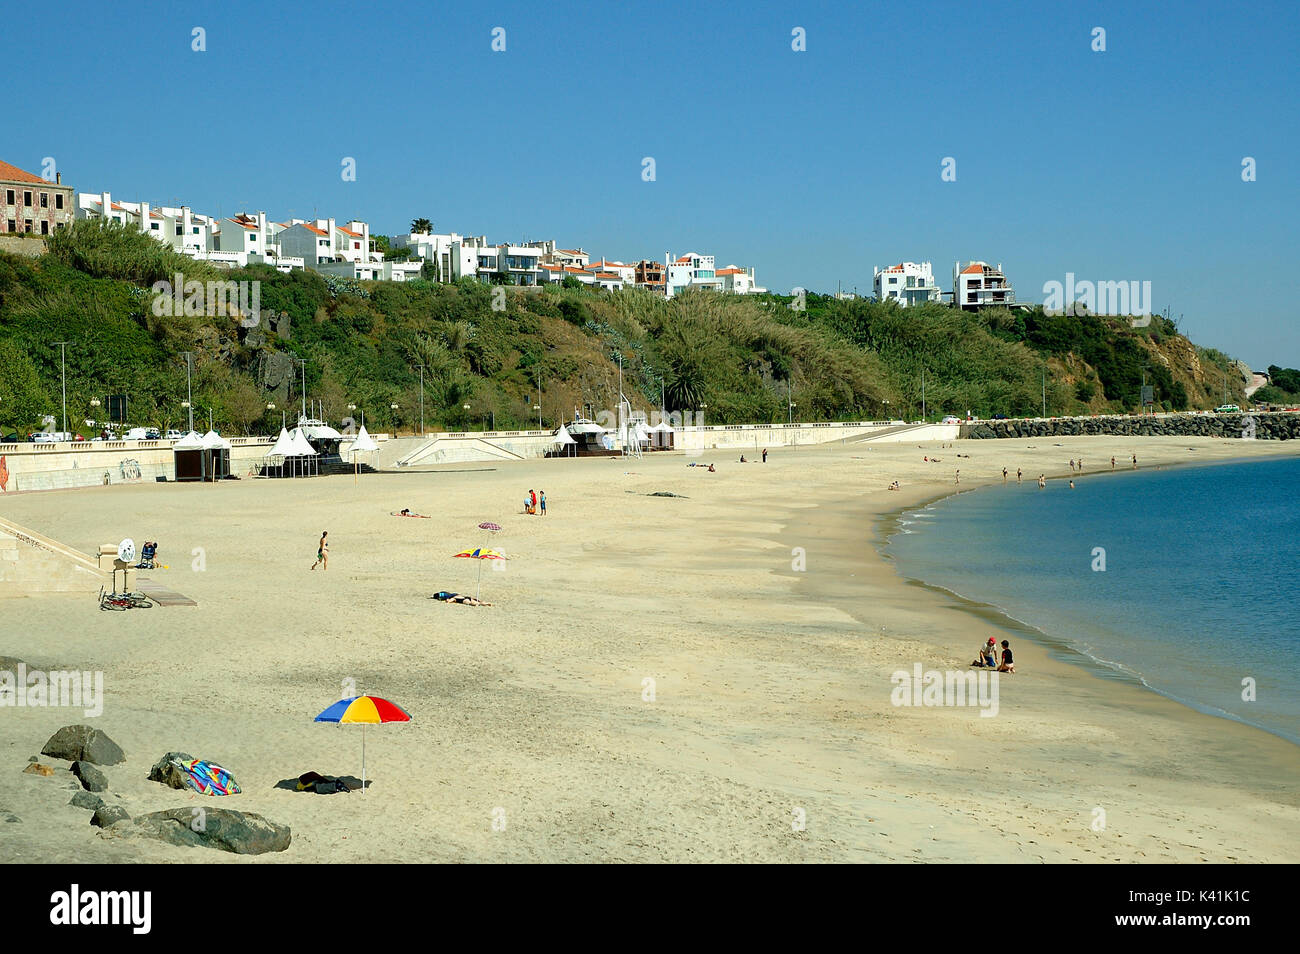 La plage de Sines, portugal alentejo. Banque D'Images